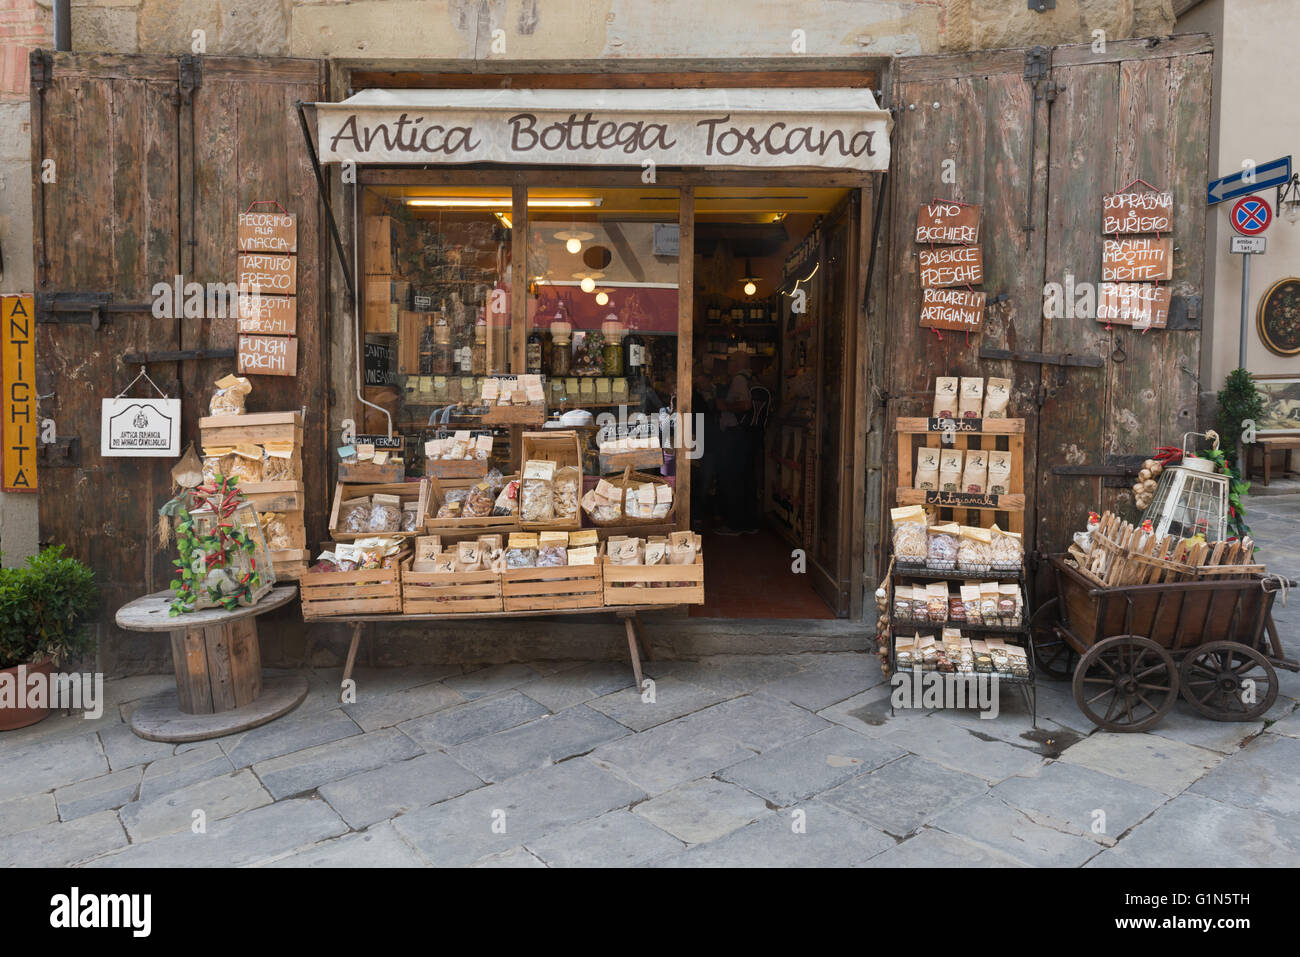 Antica Bottega Toscana Food Store, Arezzo, Tuscany, Italy Stock Photo